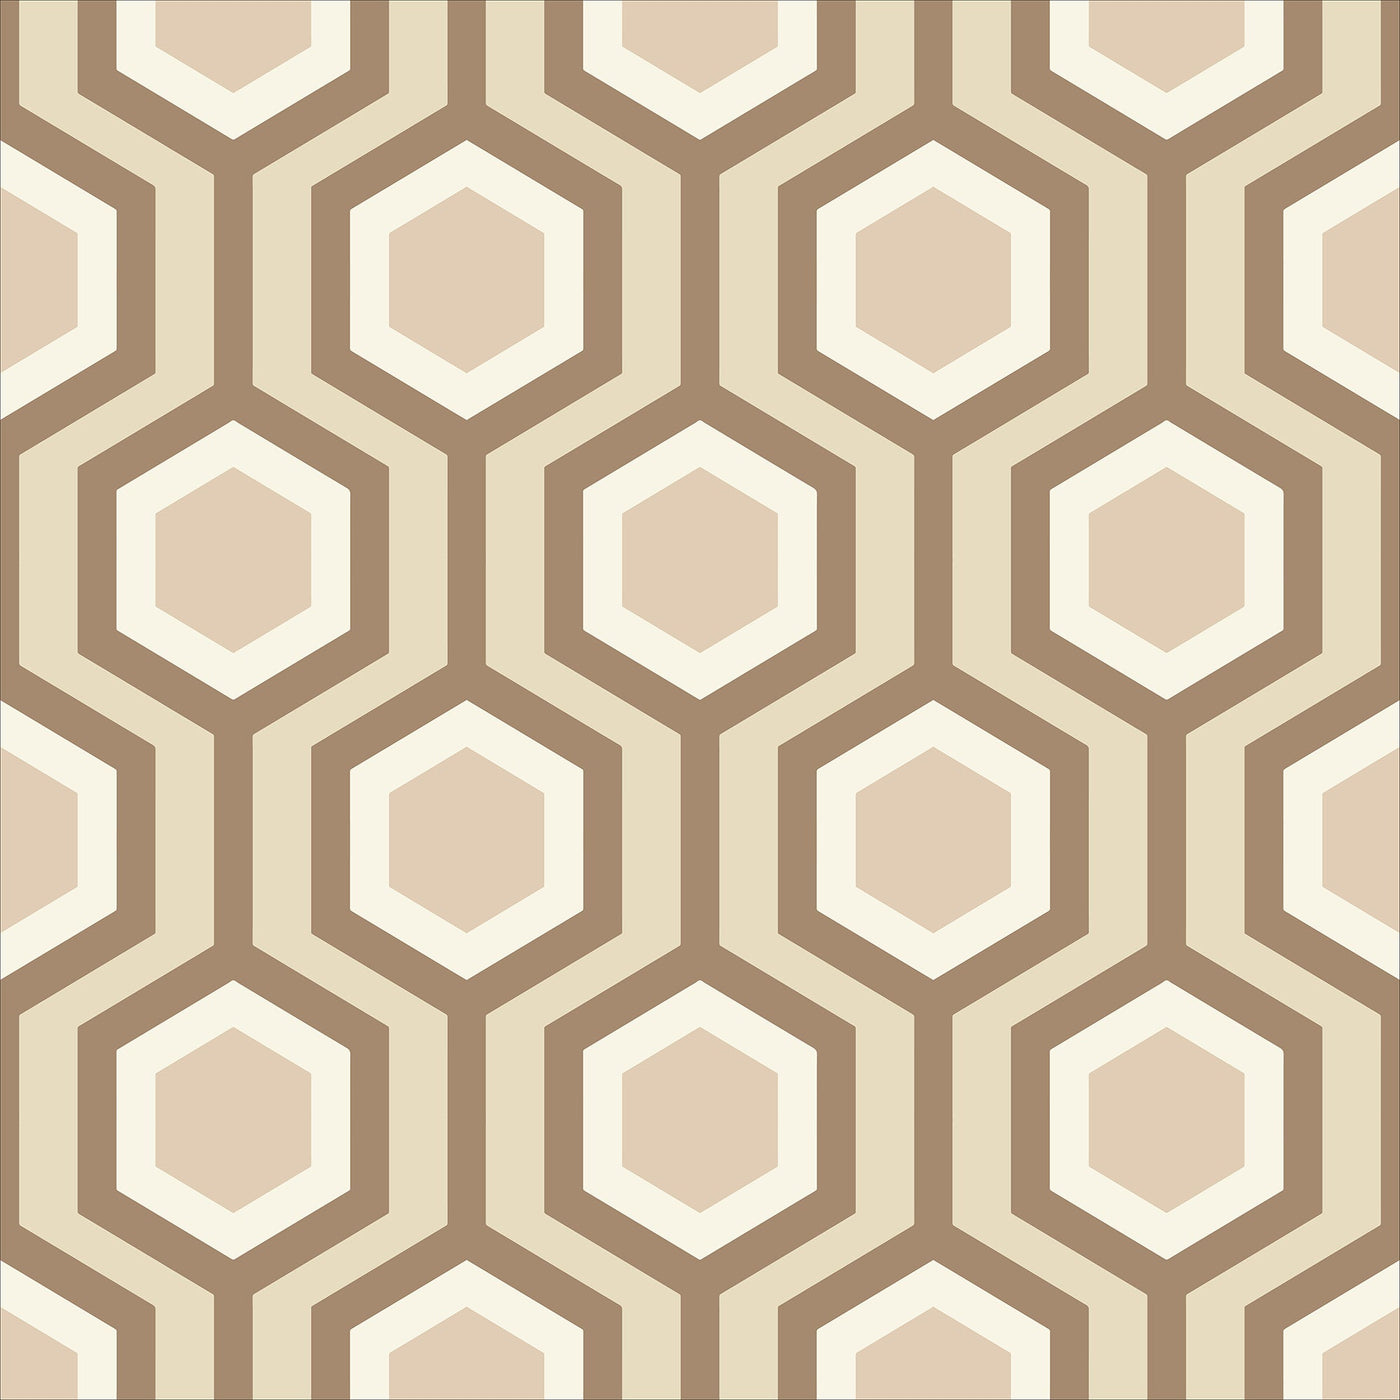 Honeycomb Wallpaper Katie Kime Design